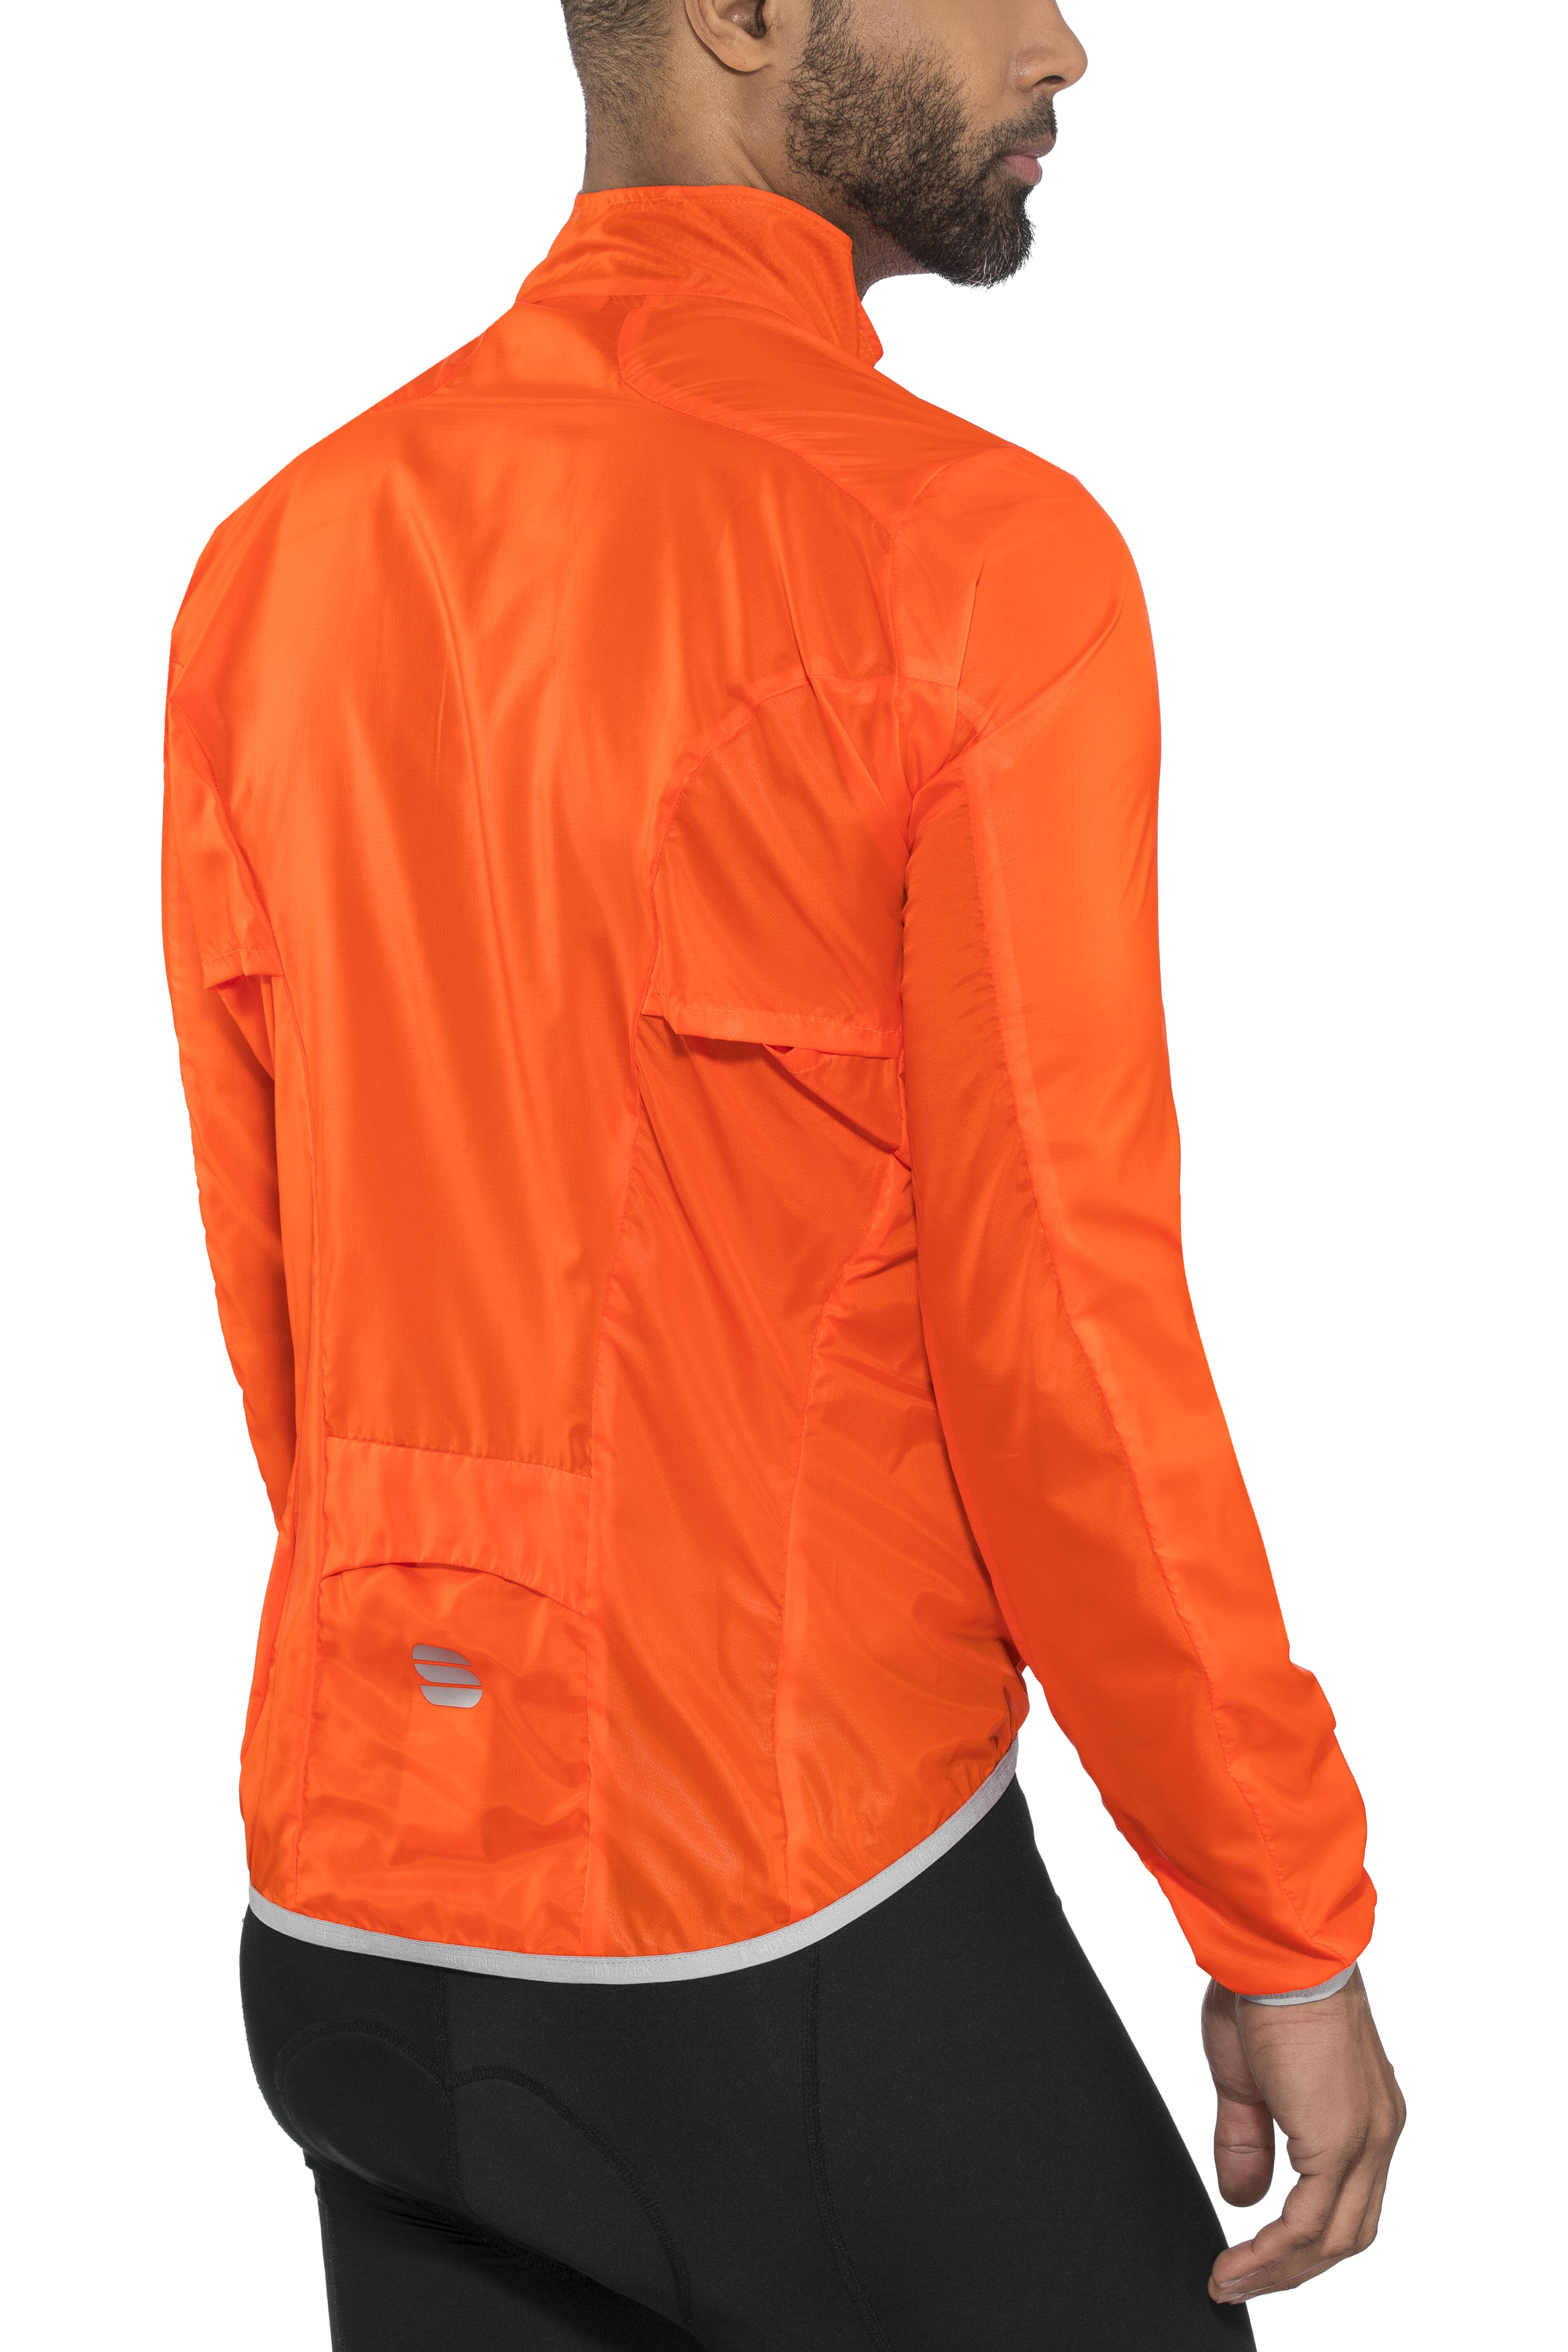 Sportful Hot Pack Easylight Jacket Men orange sdr at bikester.co.uk